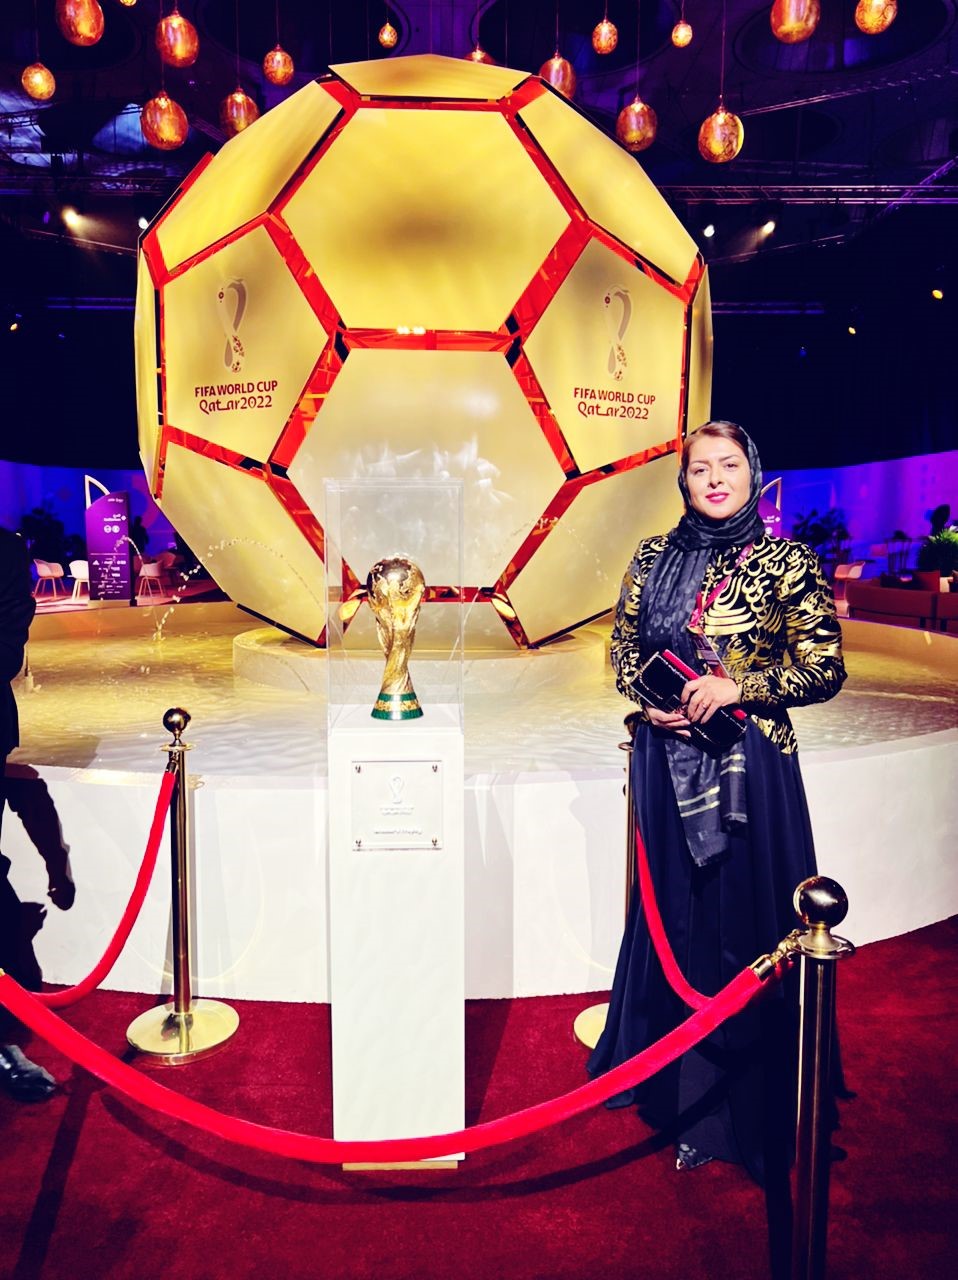 حضور مدیر هلدینگ سپاس به عنوان مهمان ویژه در مراسم قرعه کشی جام جهانی قطر 2022